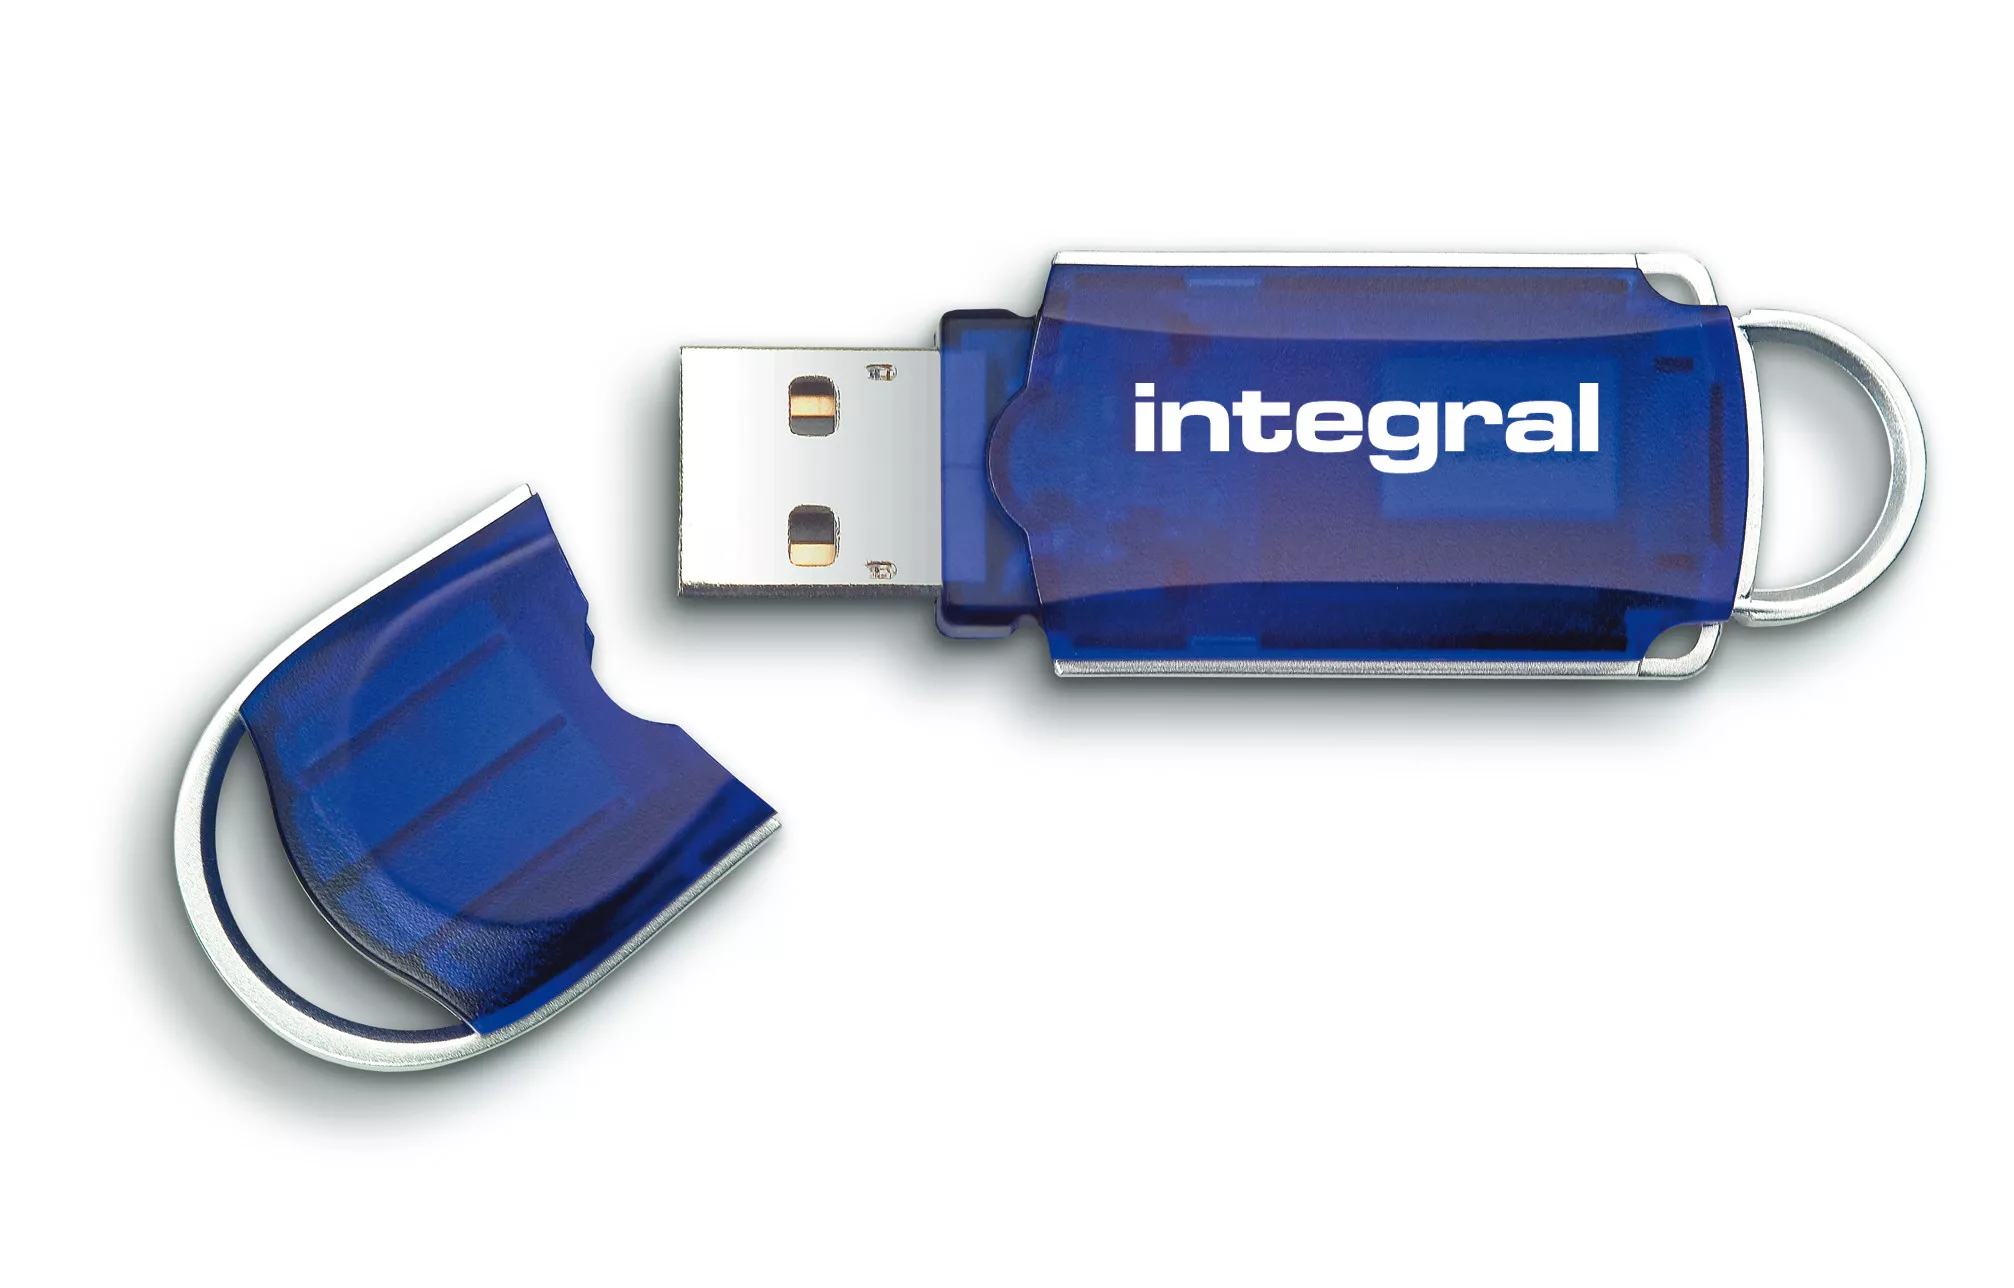 Achat Integral 32GB USB2.0 DRIVE COURIER BLUE INTEGRAL et autres produits de la marque Integral